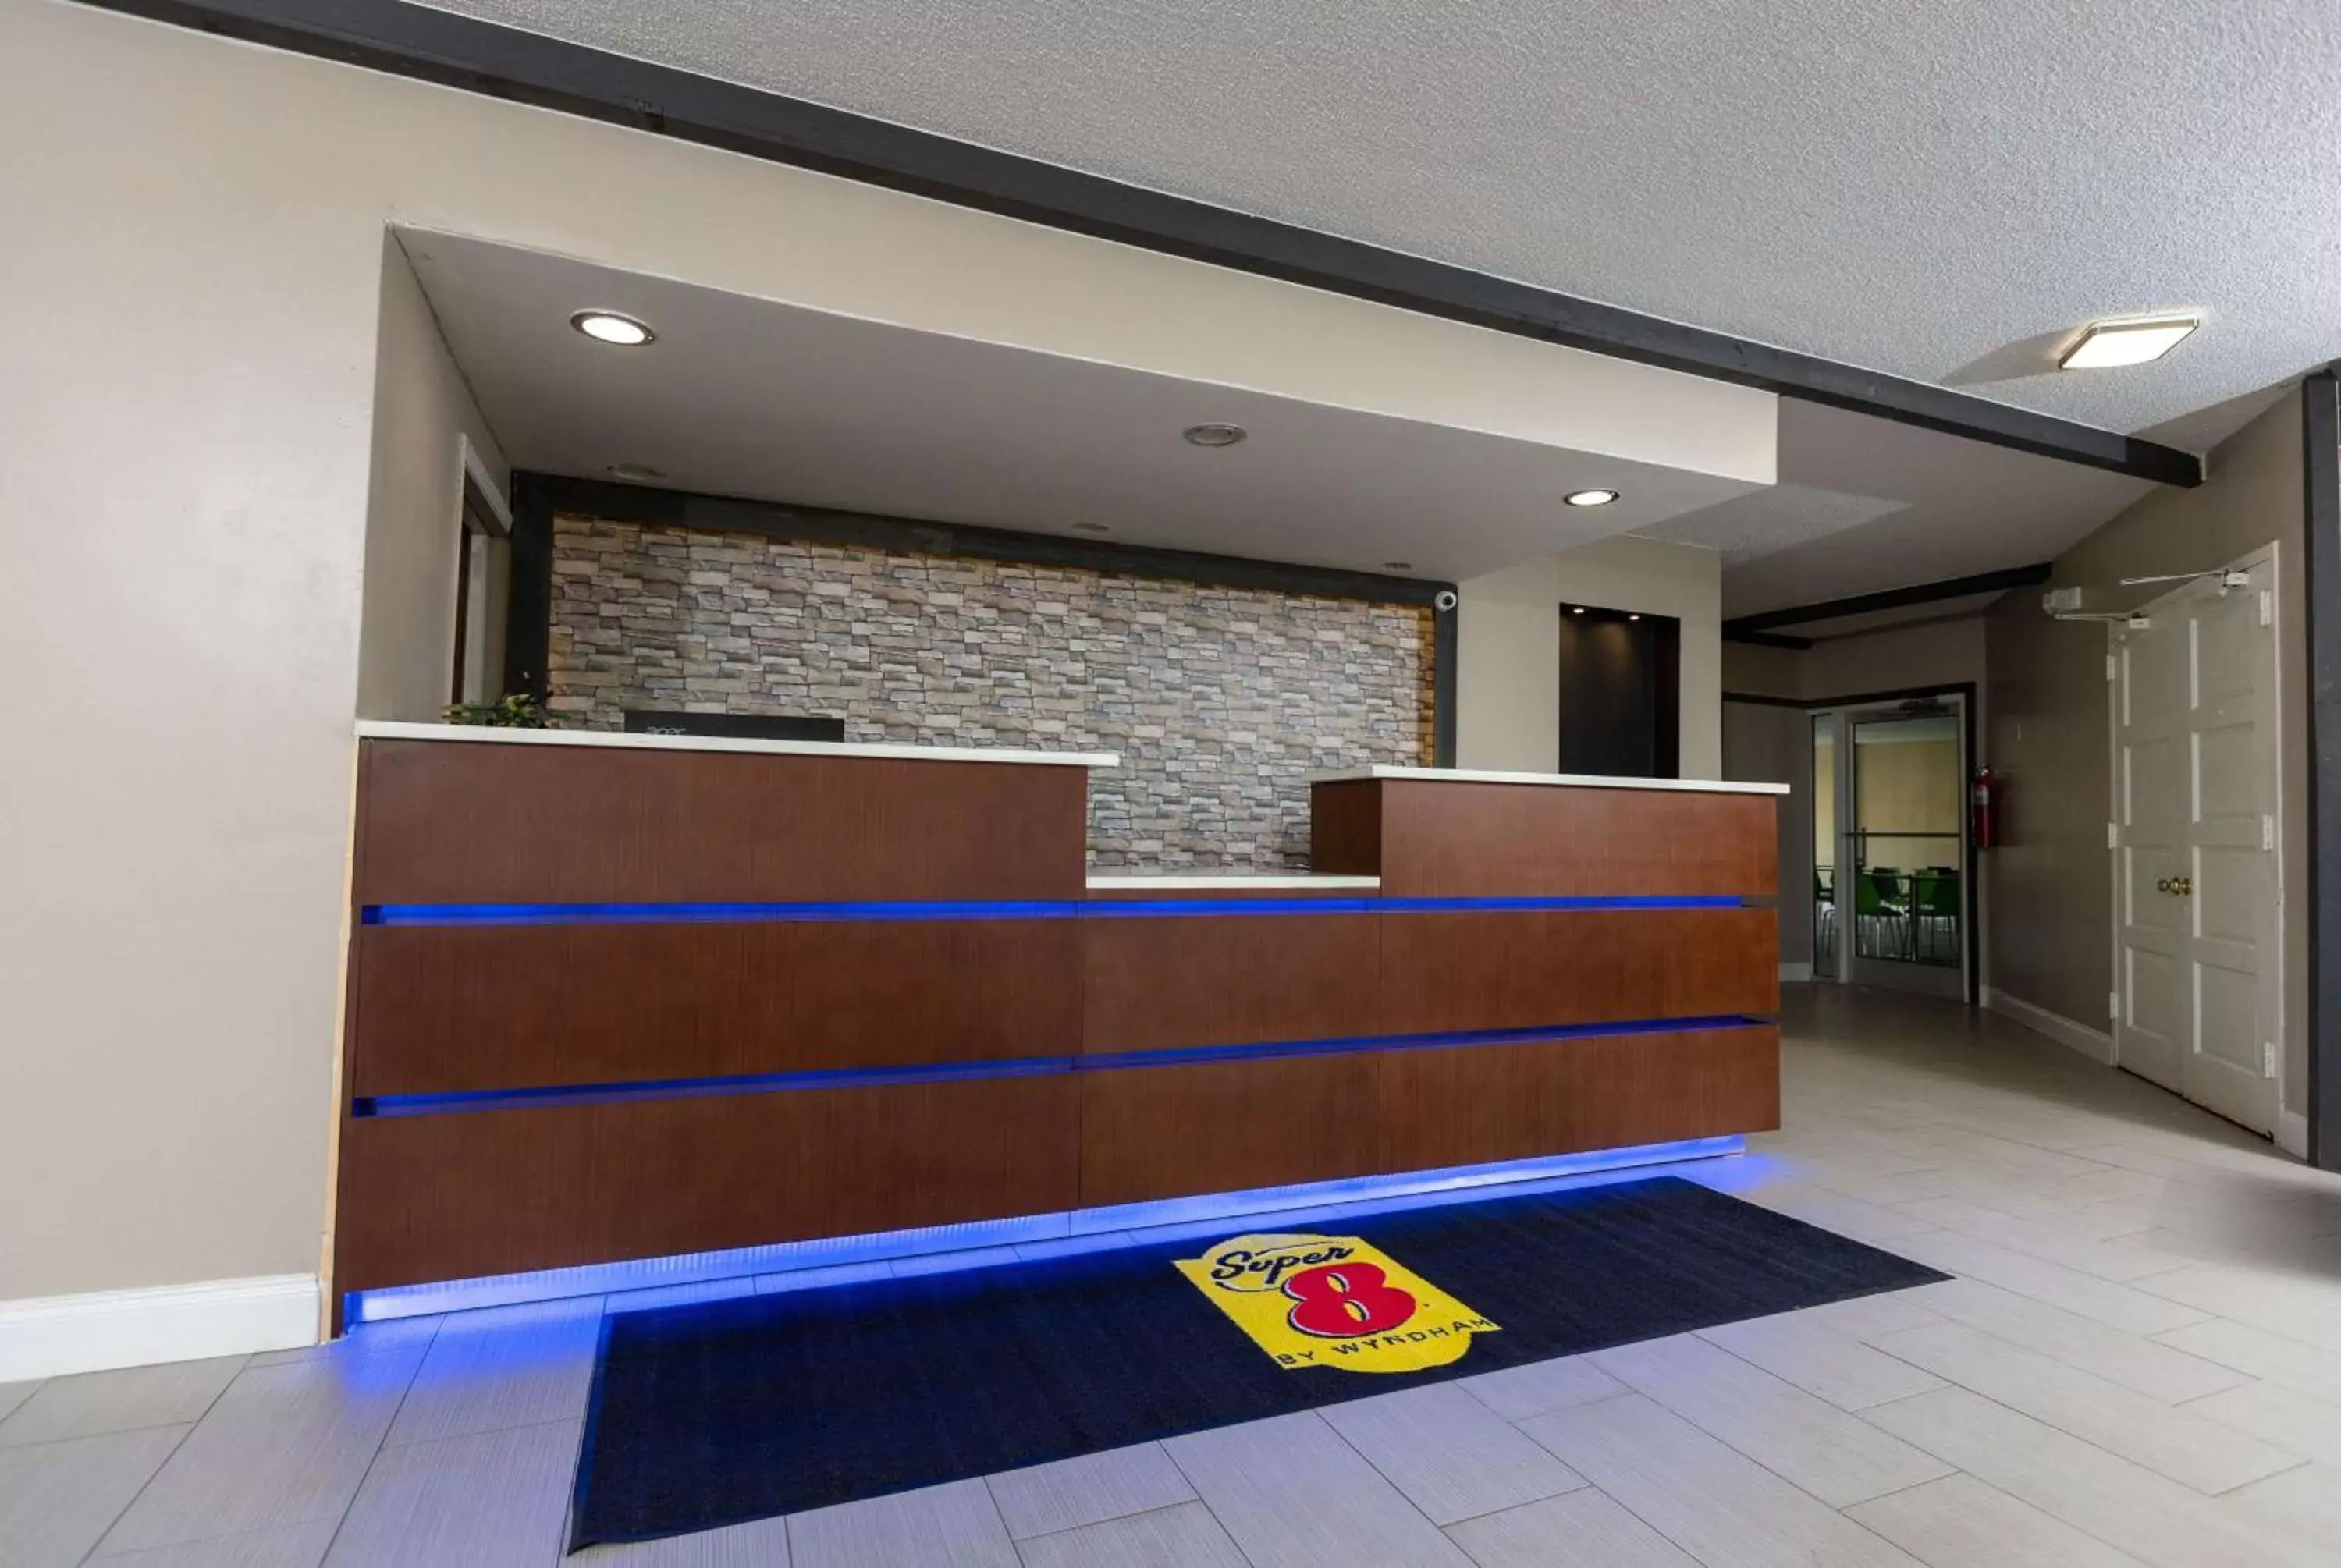 Lobby or reception, Lobby/Reception in Super 8 by Wyndham Goldsboro